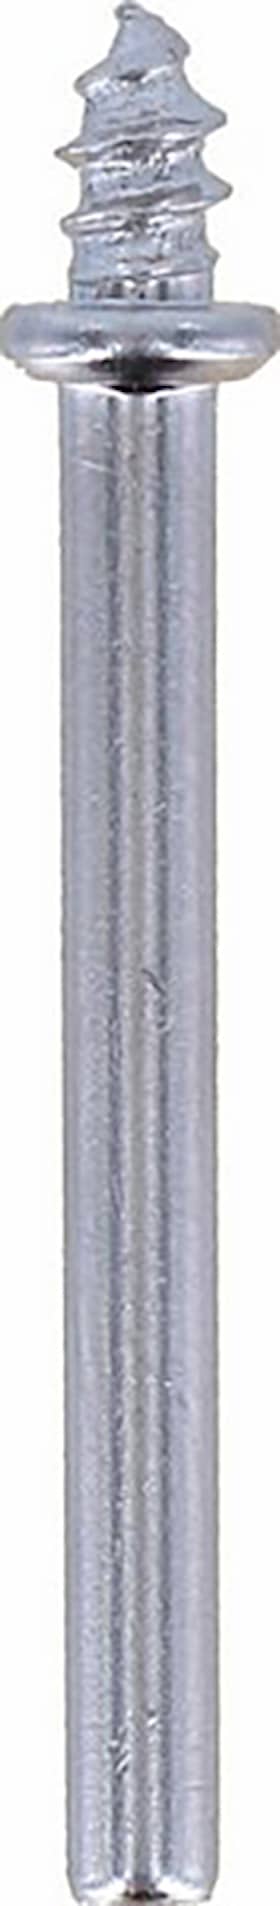 Dremel spindel 401JA 3,2 mm 3 stk